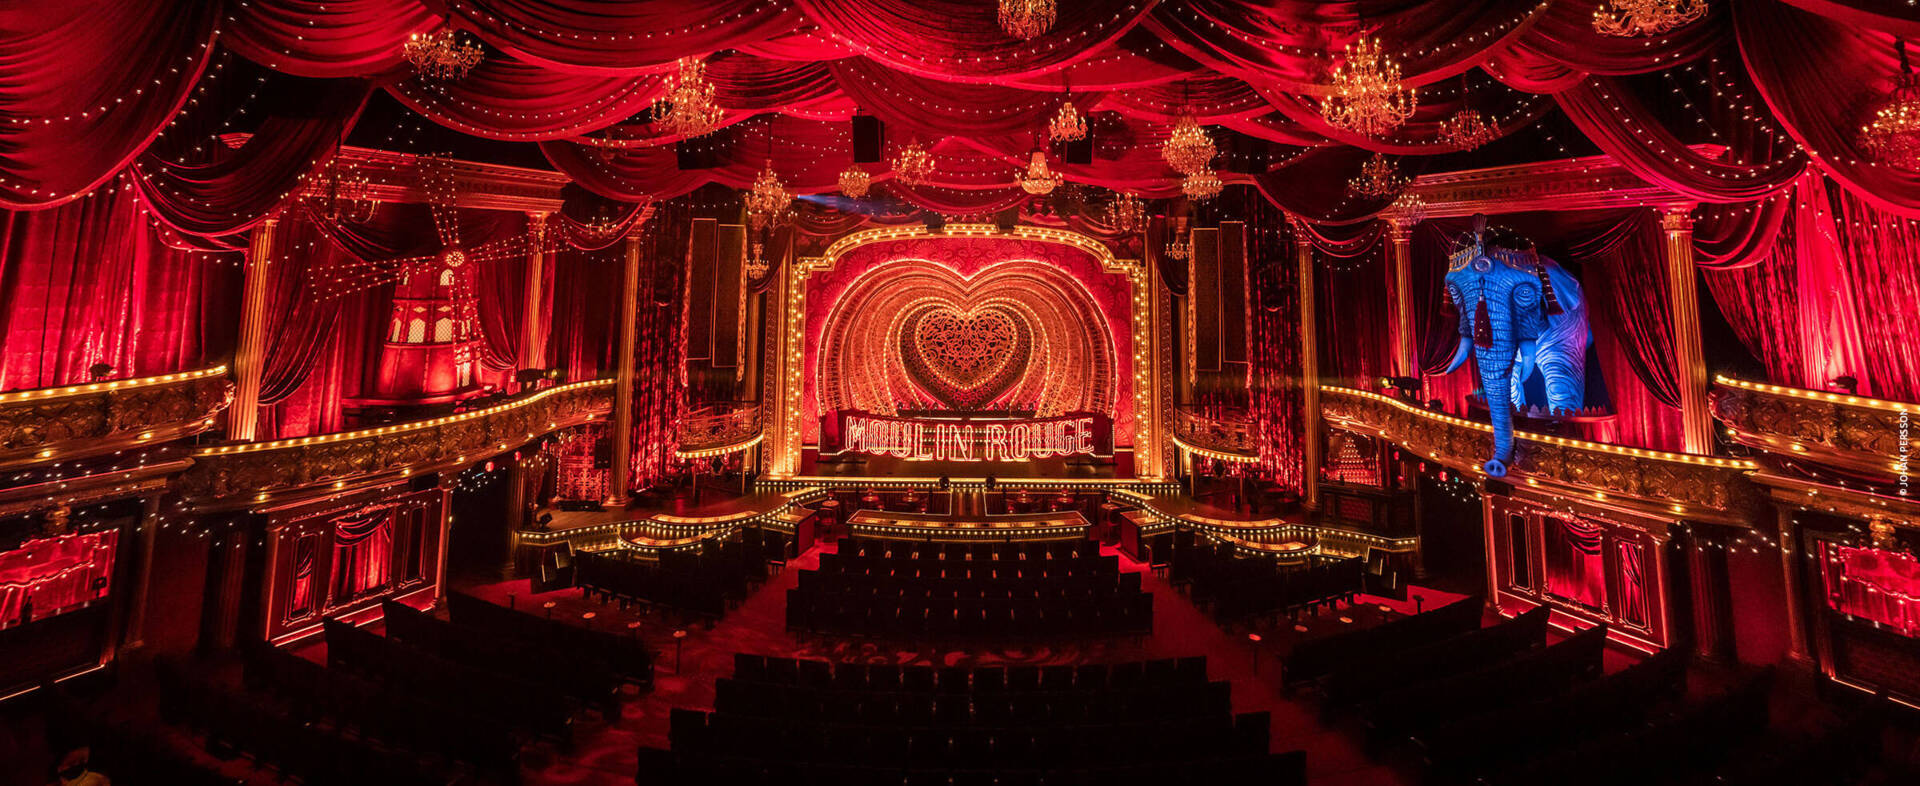 Moulin Rouge! Das Musical in Köln - H-Hotels.com - Offizielle Webseite